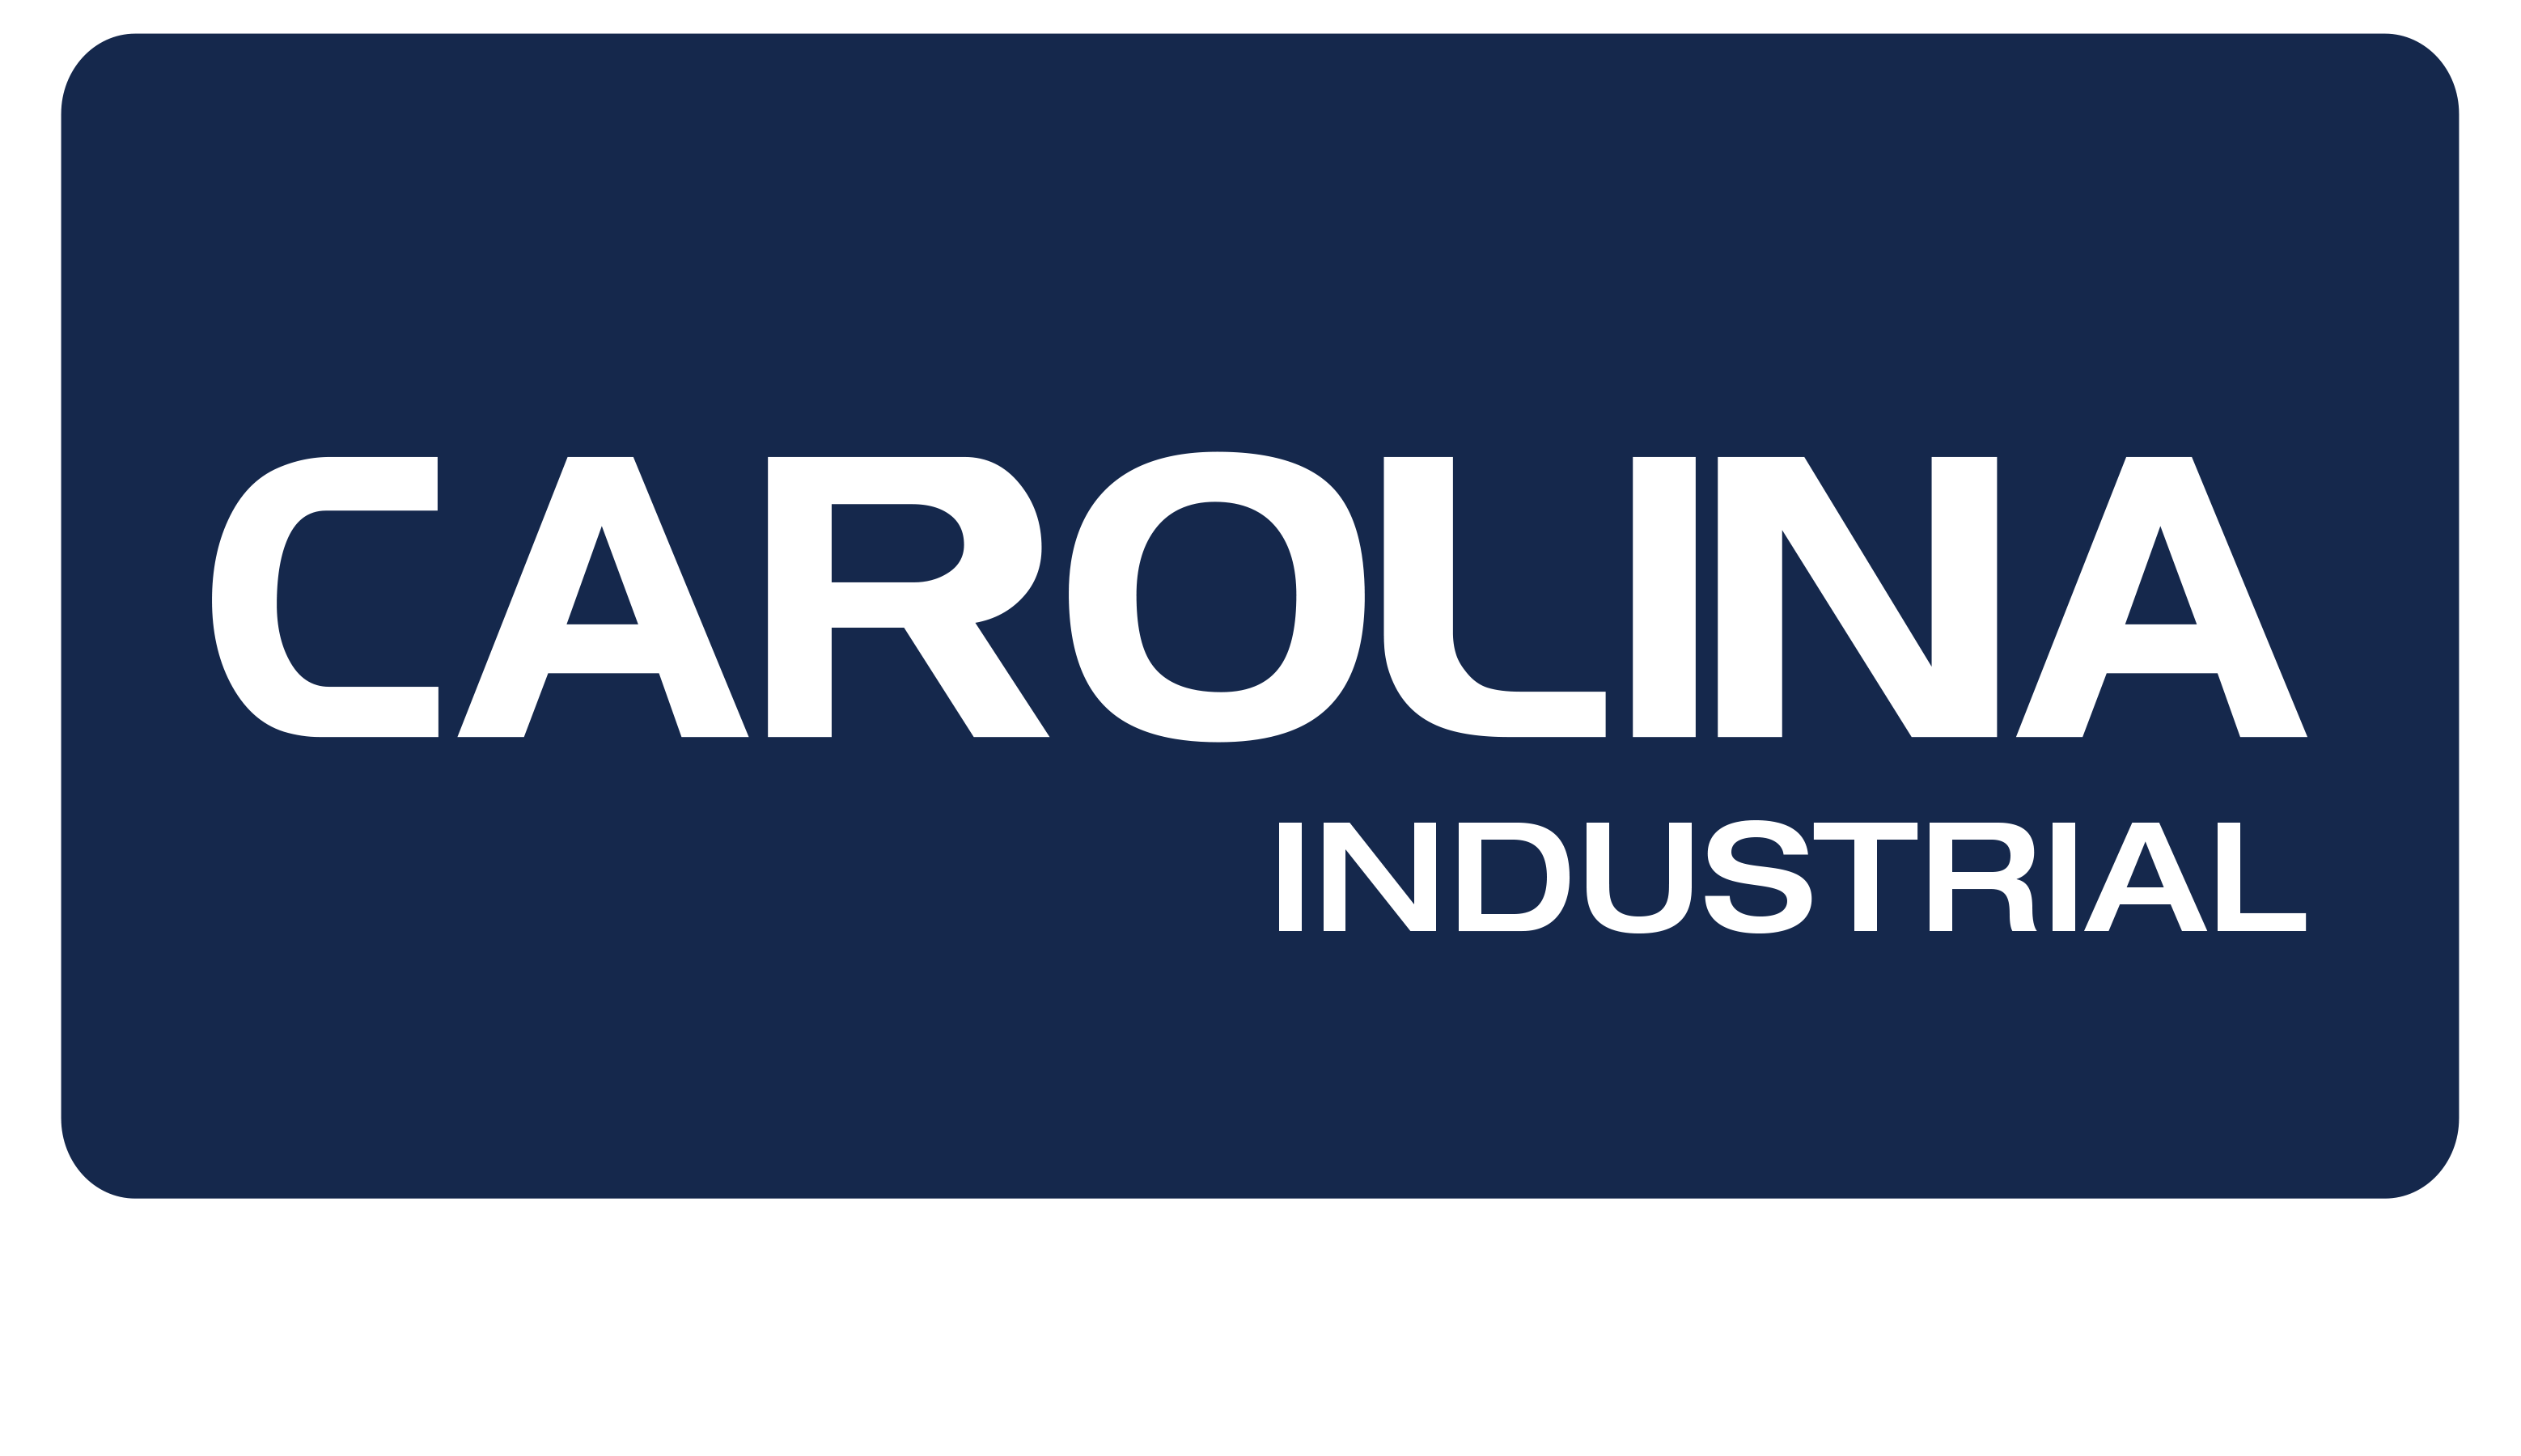 Carolina Industrial